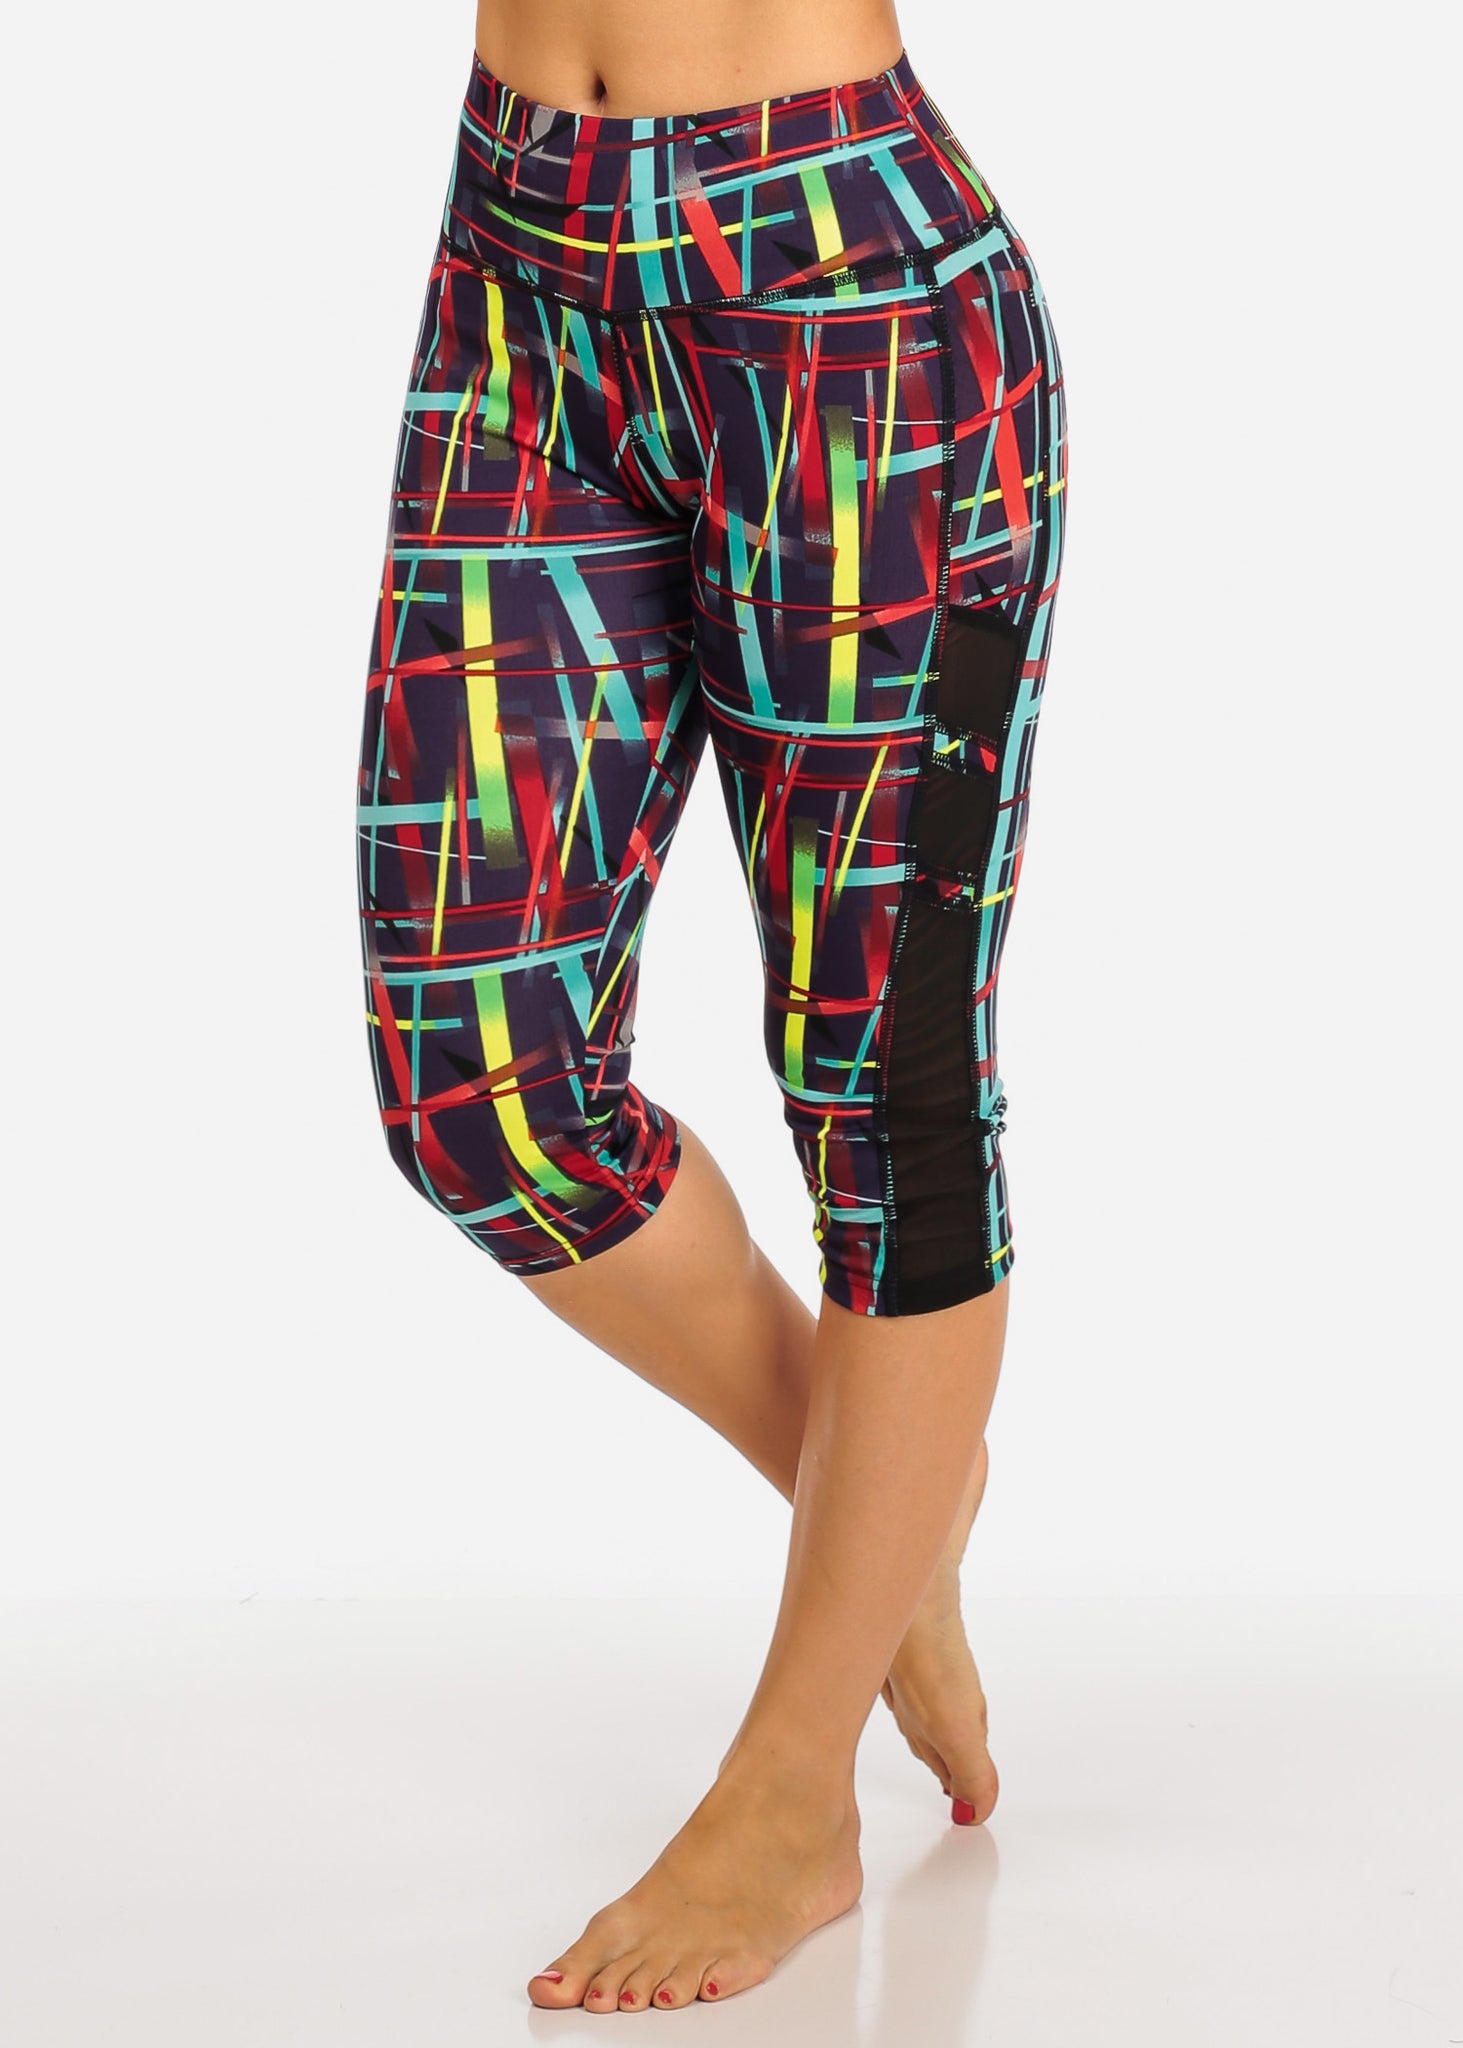 Multi Color Reddit Women's Capri Leggings Pull on Style D1086 – One Size  Fits